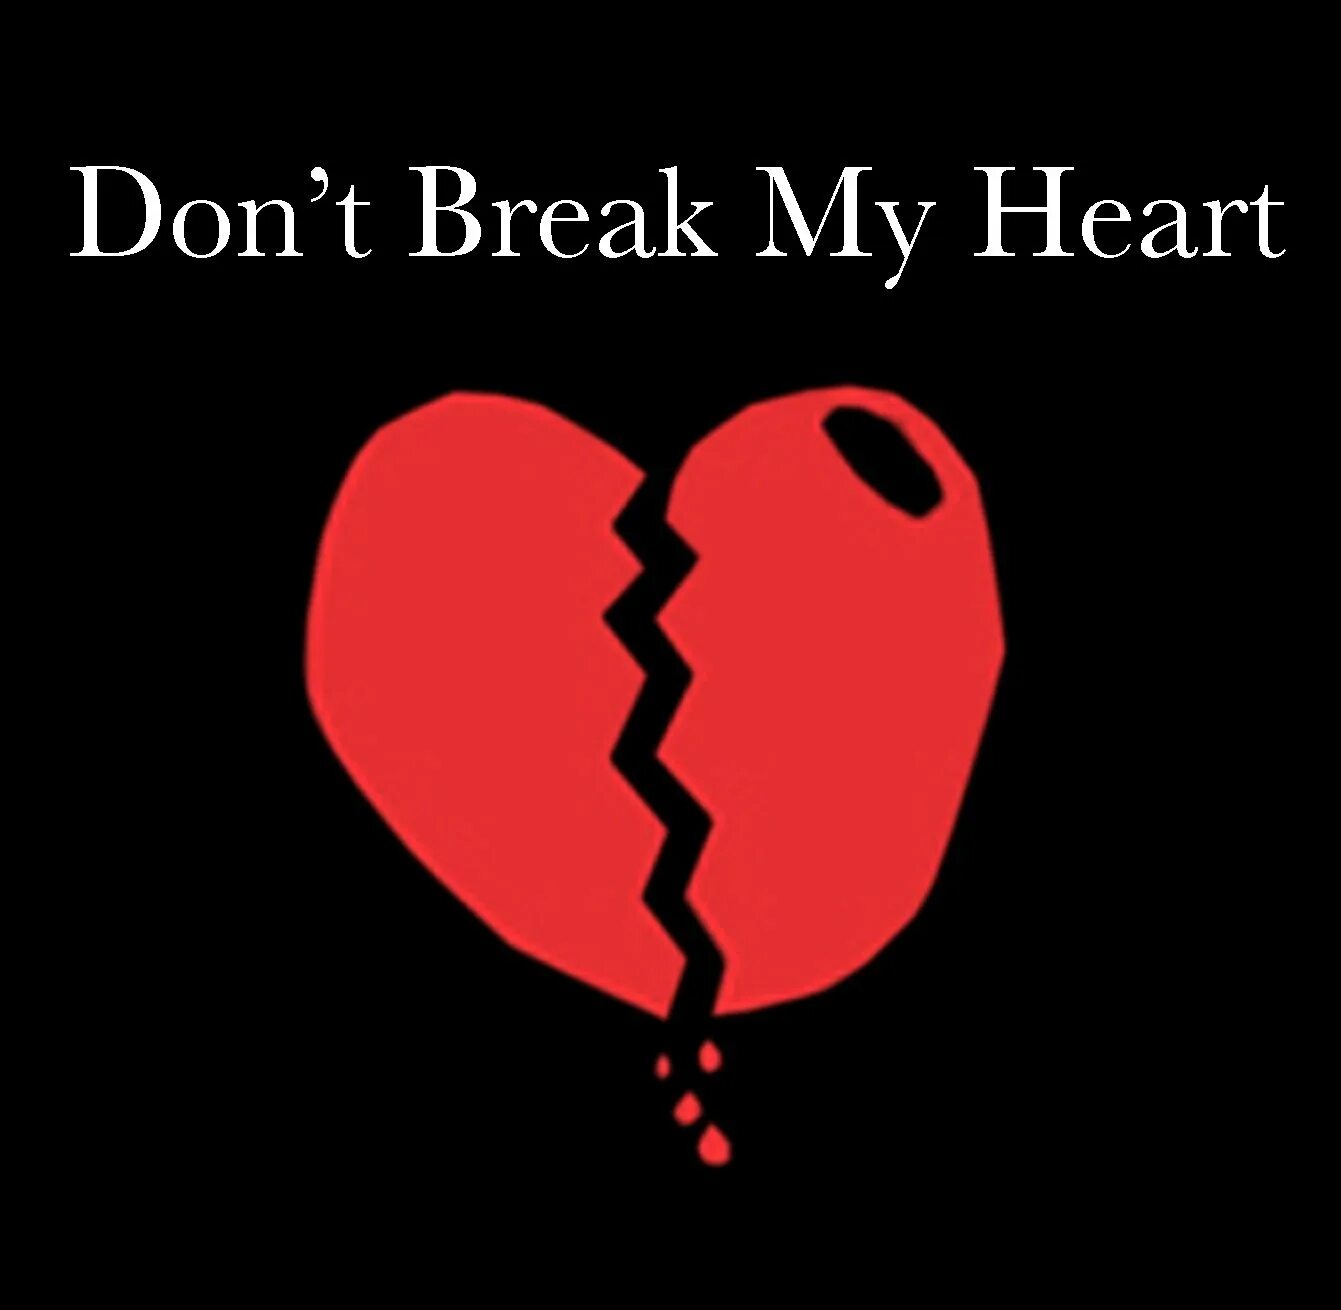 Don't Break my Heart. Разбитое сердце картинки на аву. Escape please don`t Break my Heart. Трек please don't Break my Heart. Break my heart if you can